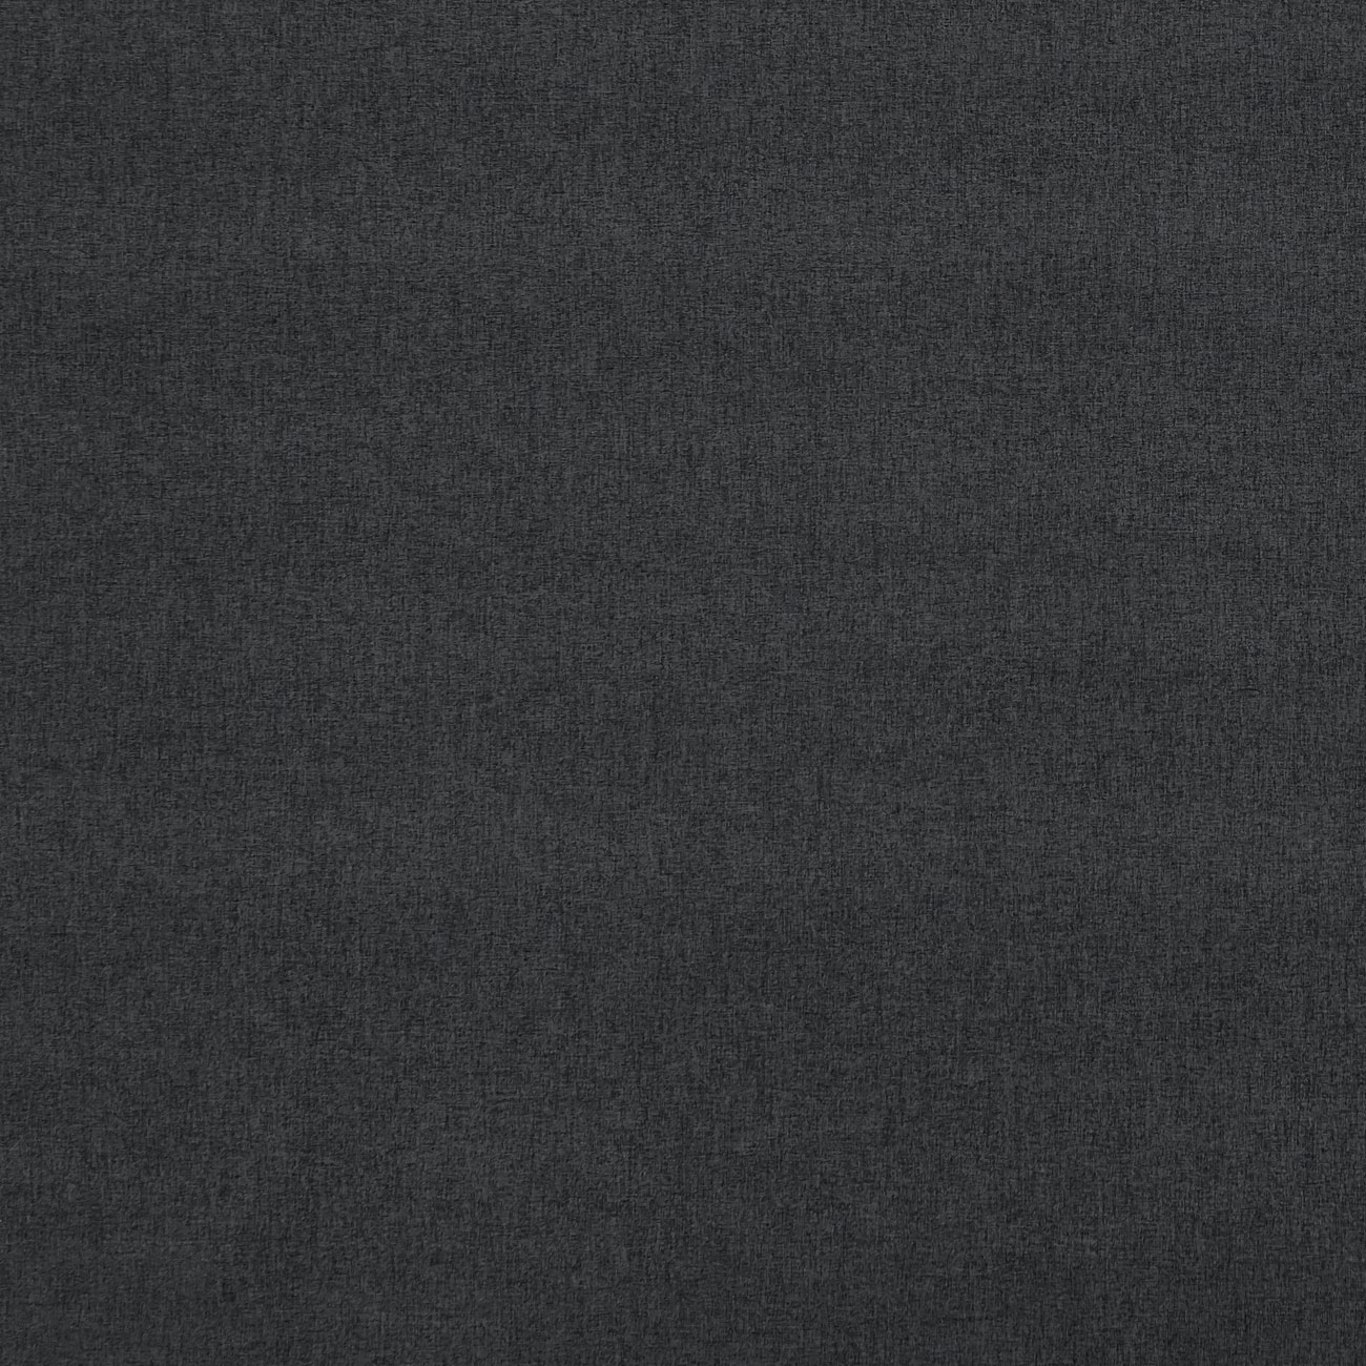 Highlander Ebony Fabric by CNC